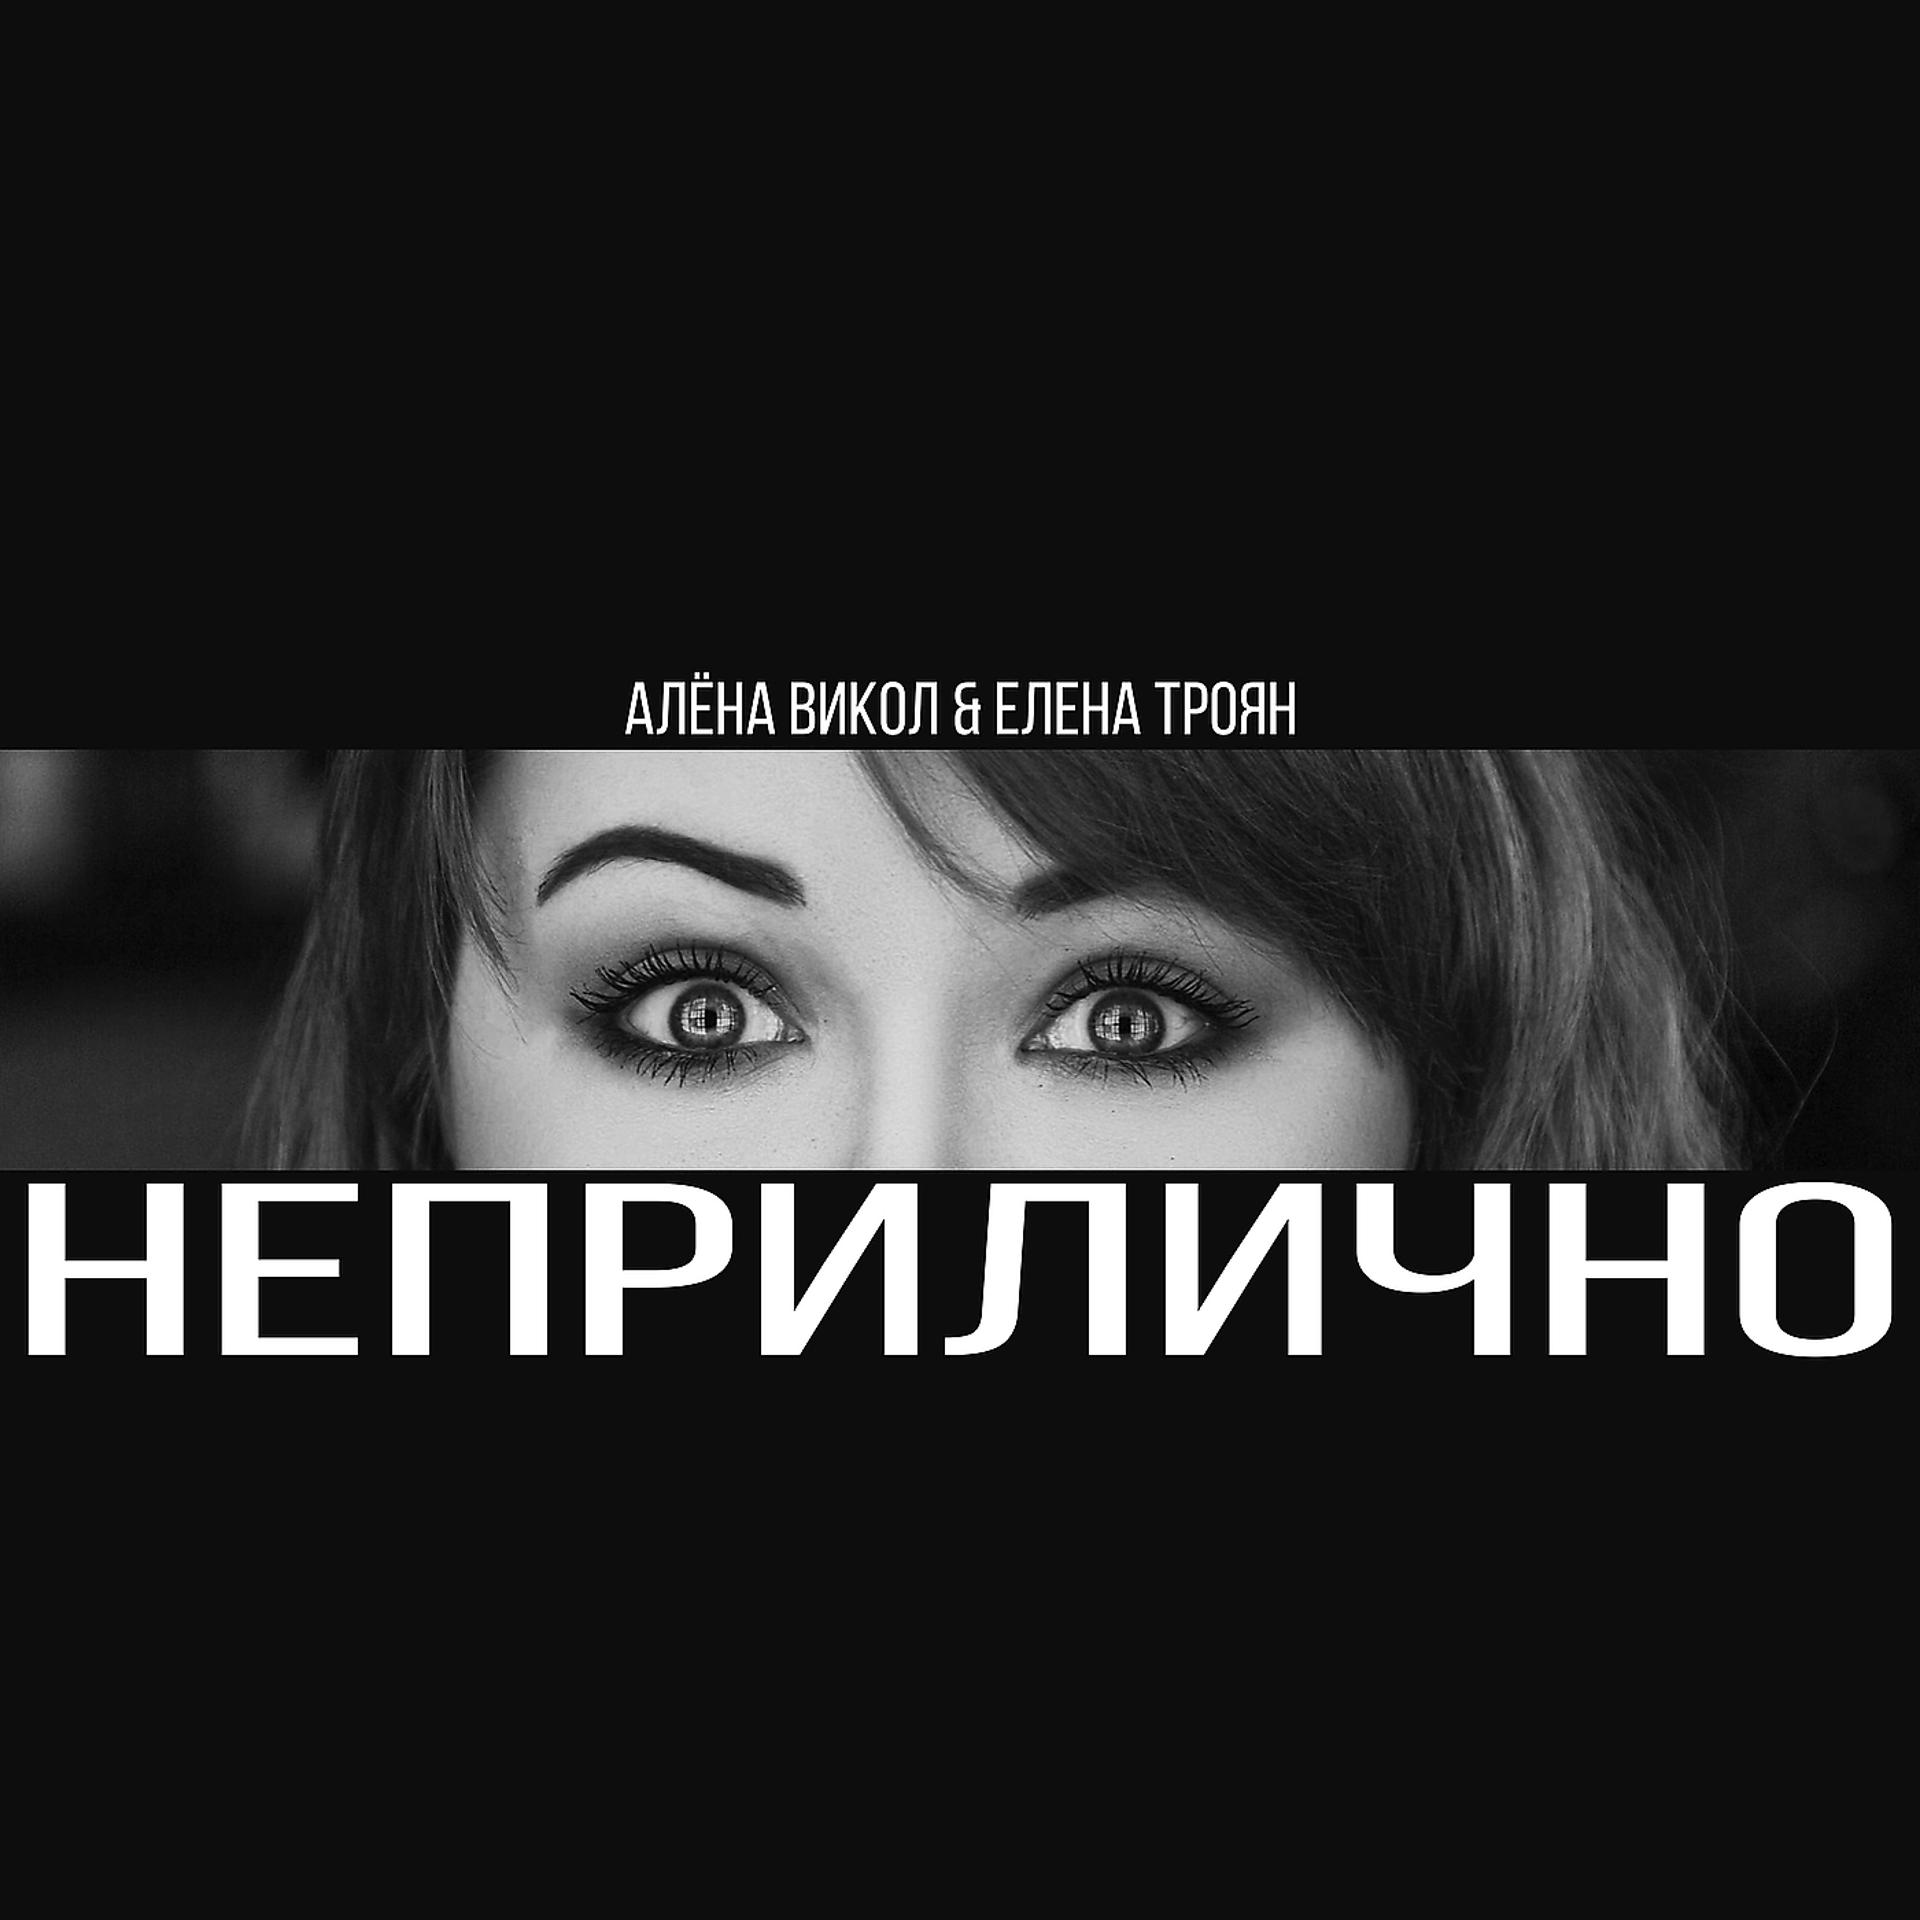 Елена Троян - фото